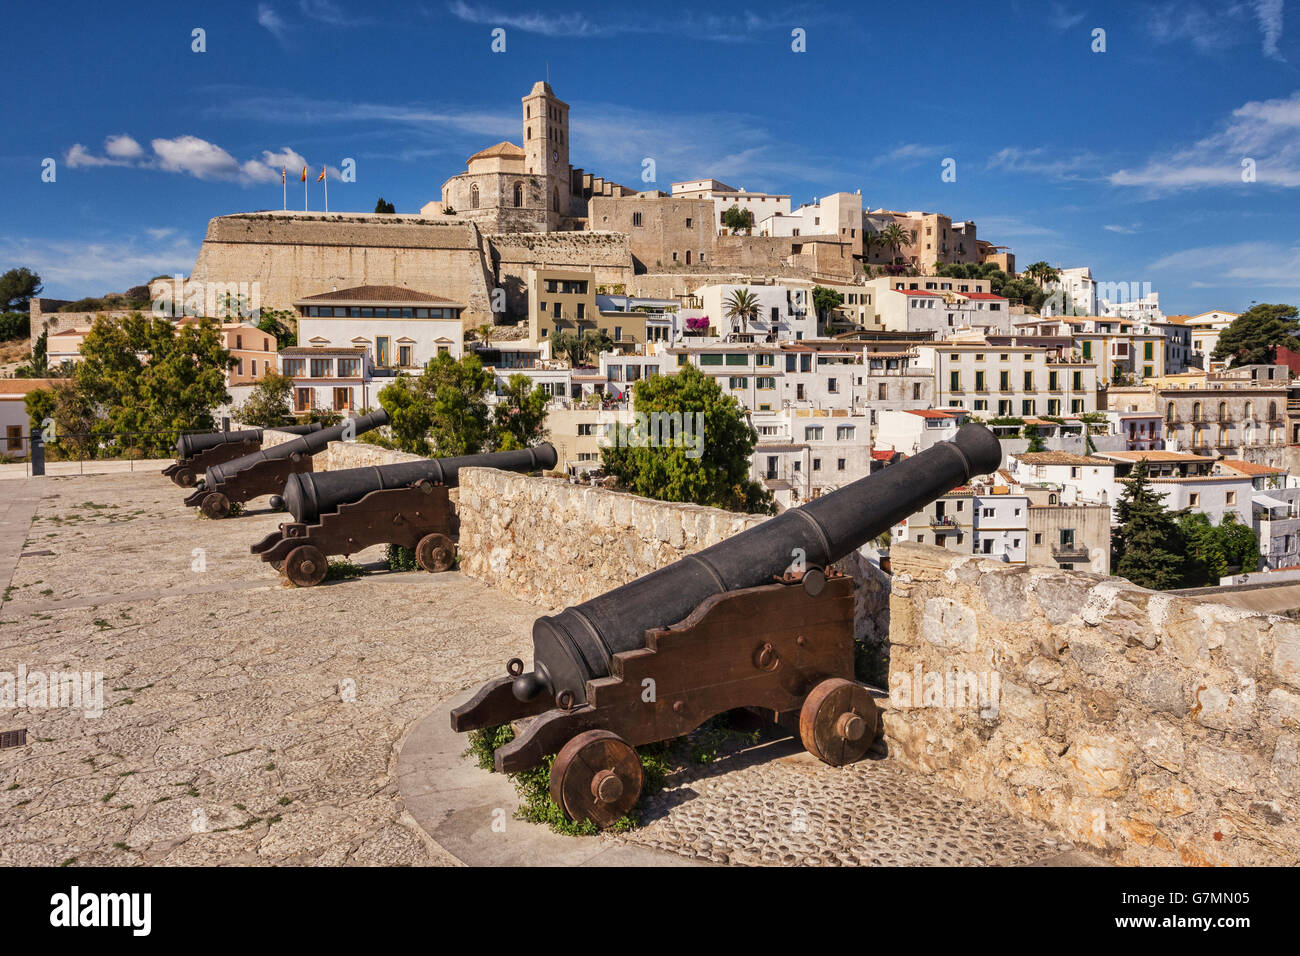 Le Dalt Vila, la partie ancienne de la ville d'Ibiza, dominée par la Cathédrale, et canon monté sur les murs de la ville. Banque D'Images